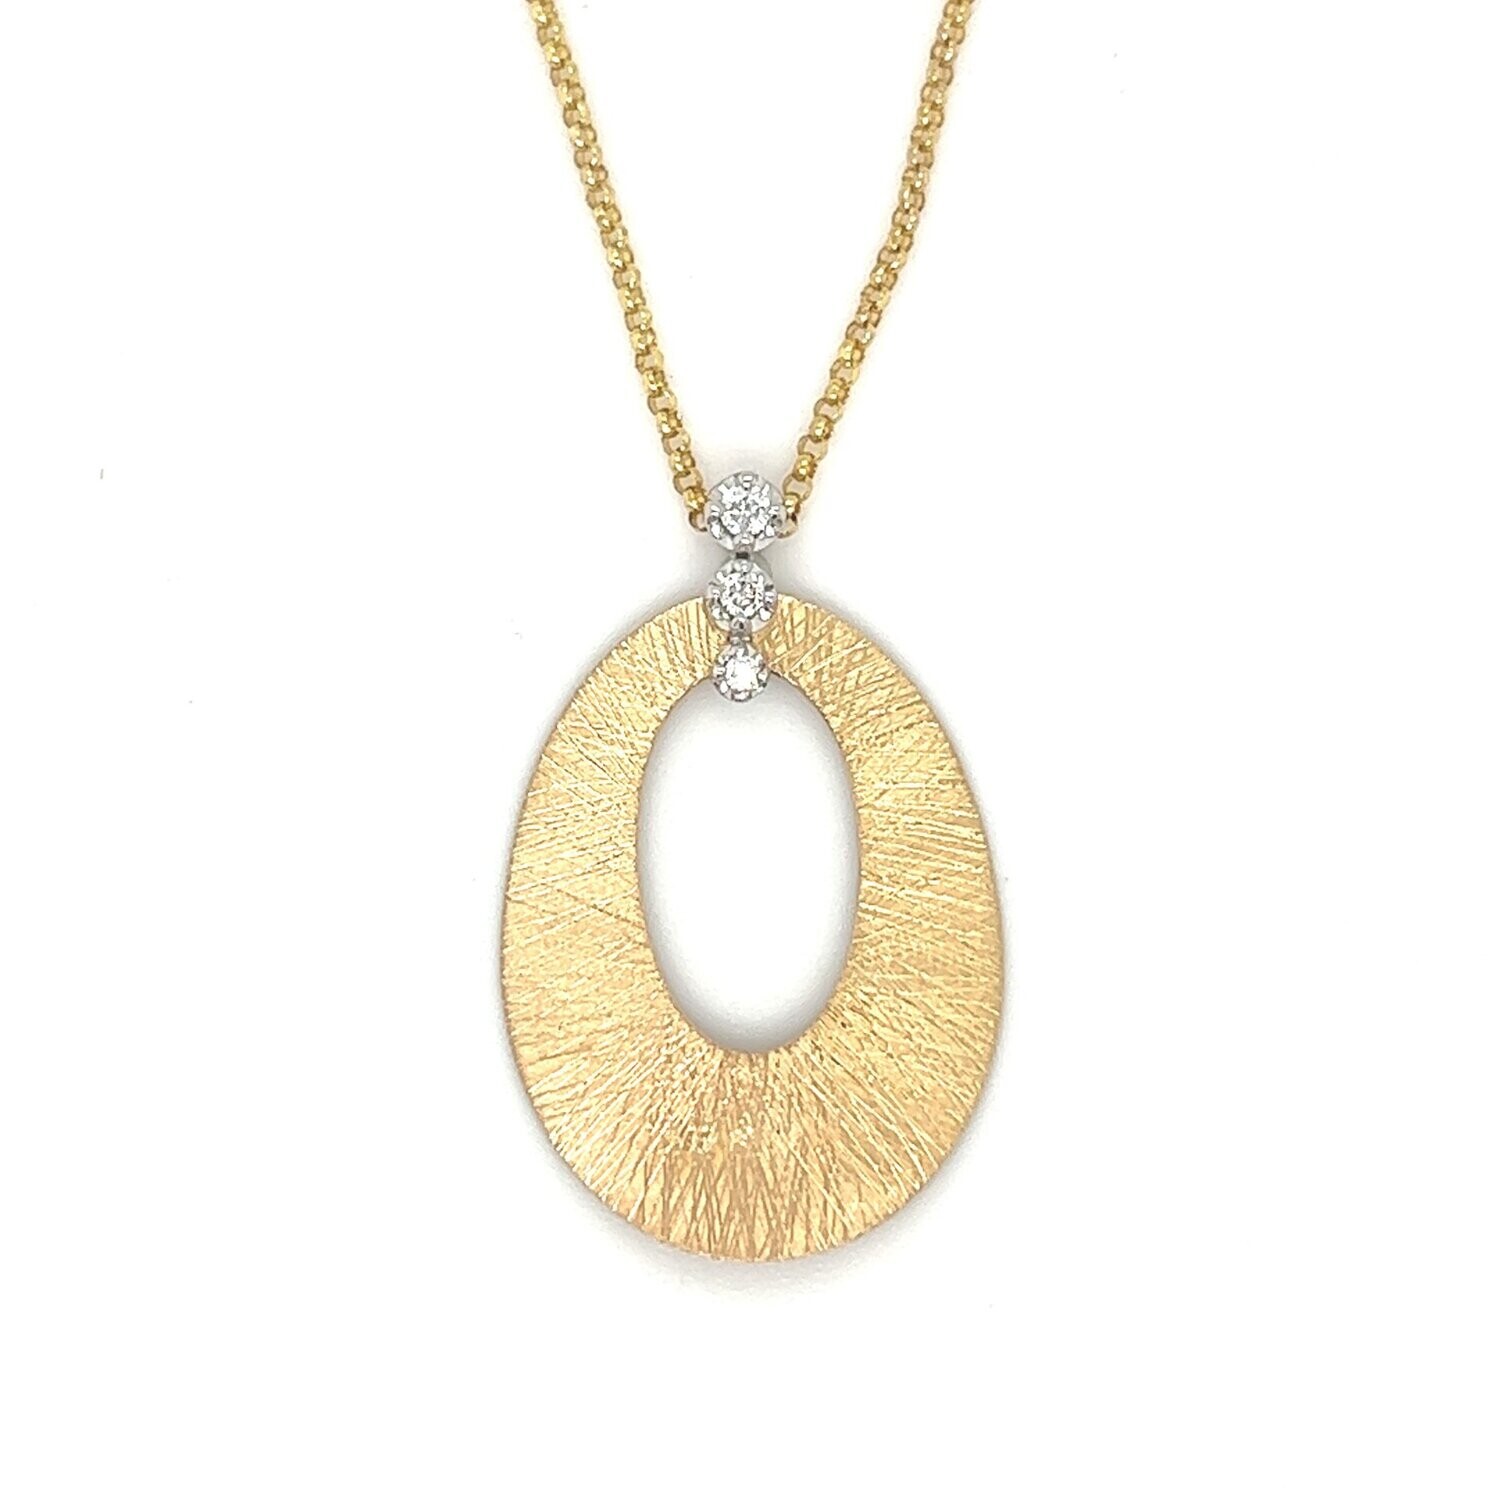 Oval Gold & Diamonds Necklace